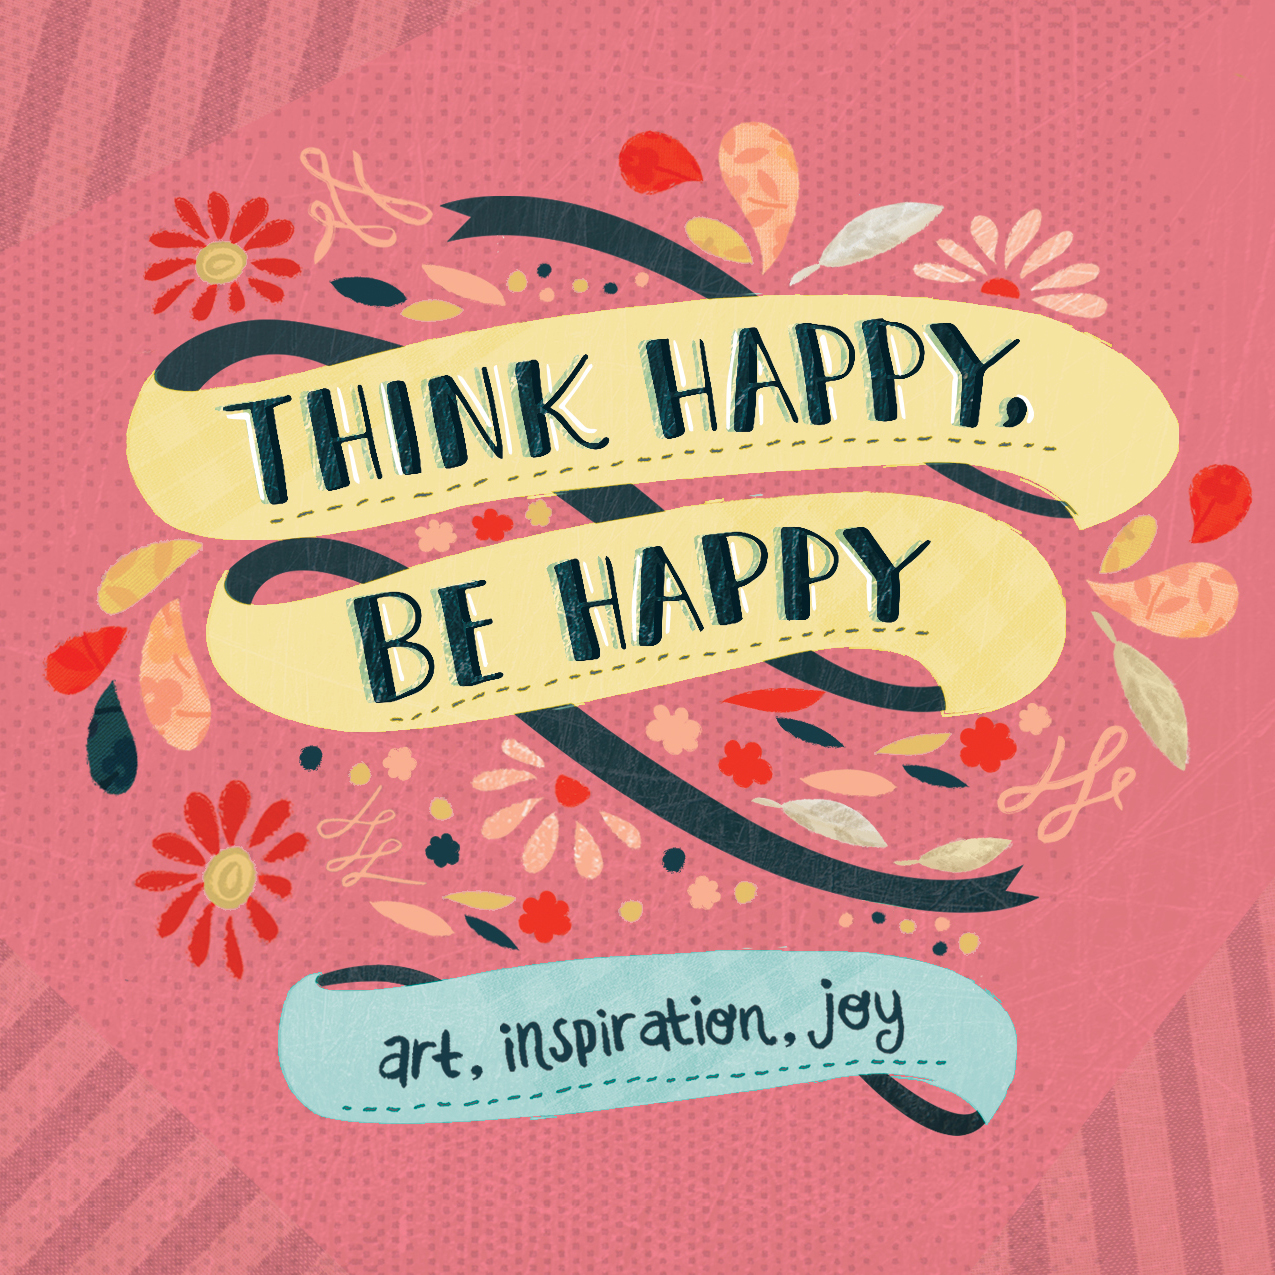 Be happy away. Think Happy, be Happy. Be Happy Art. Think Happy книга. Be Happy картинки.